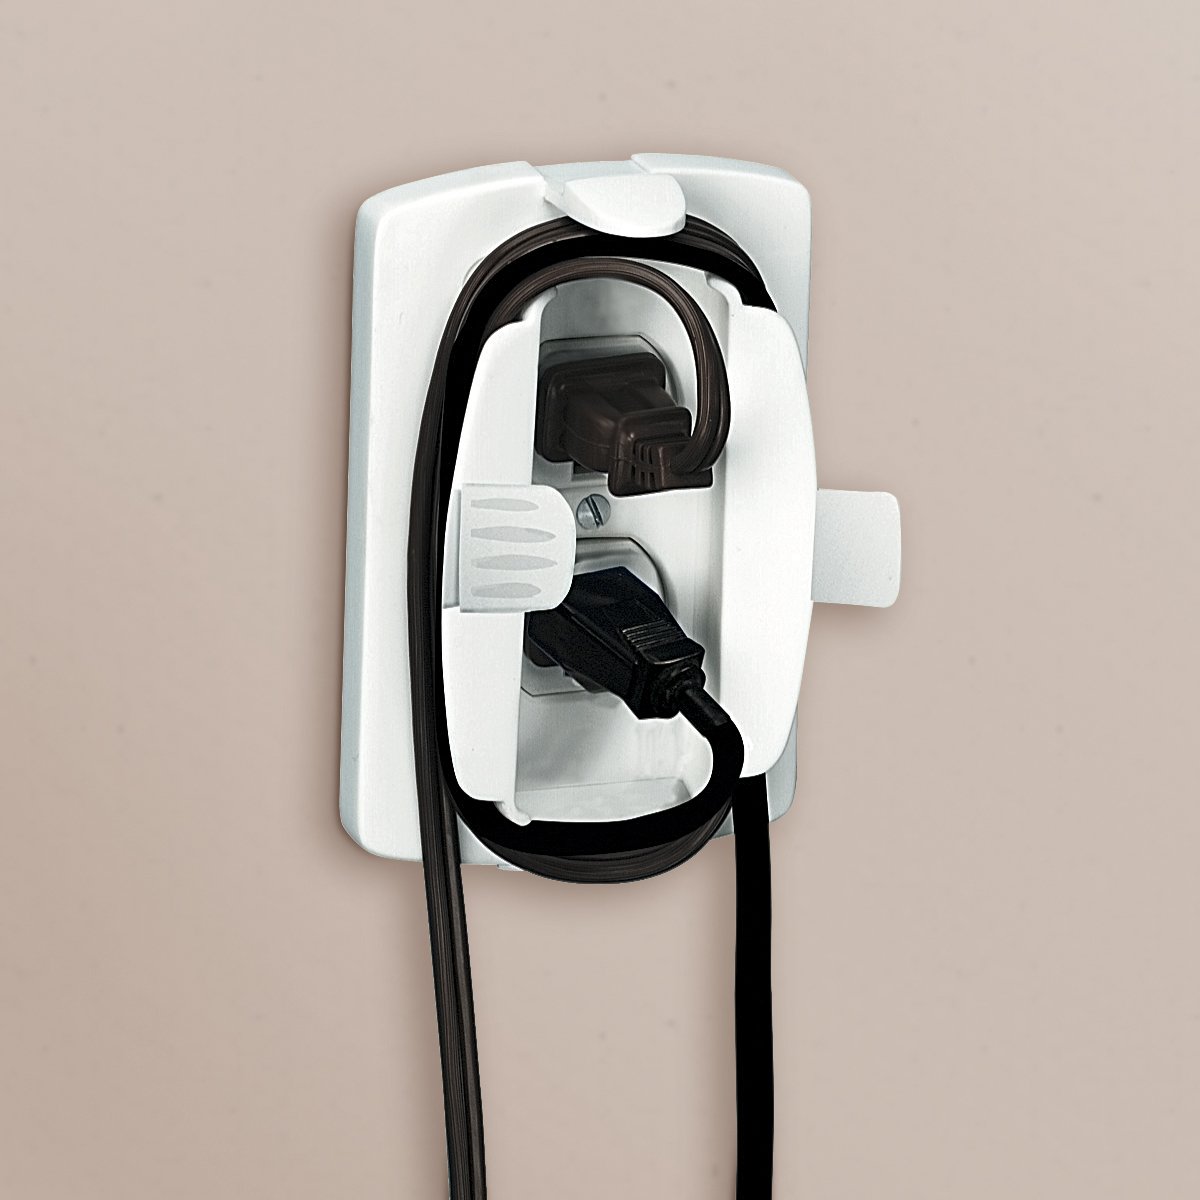 Safety 1st Outlet Cover/Cord Shortner, White, 2PK